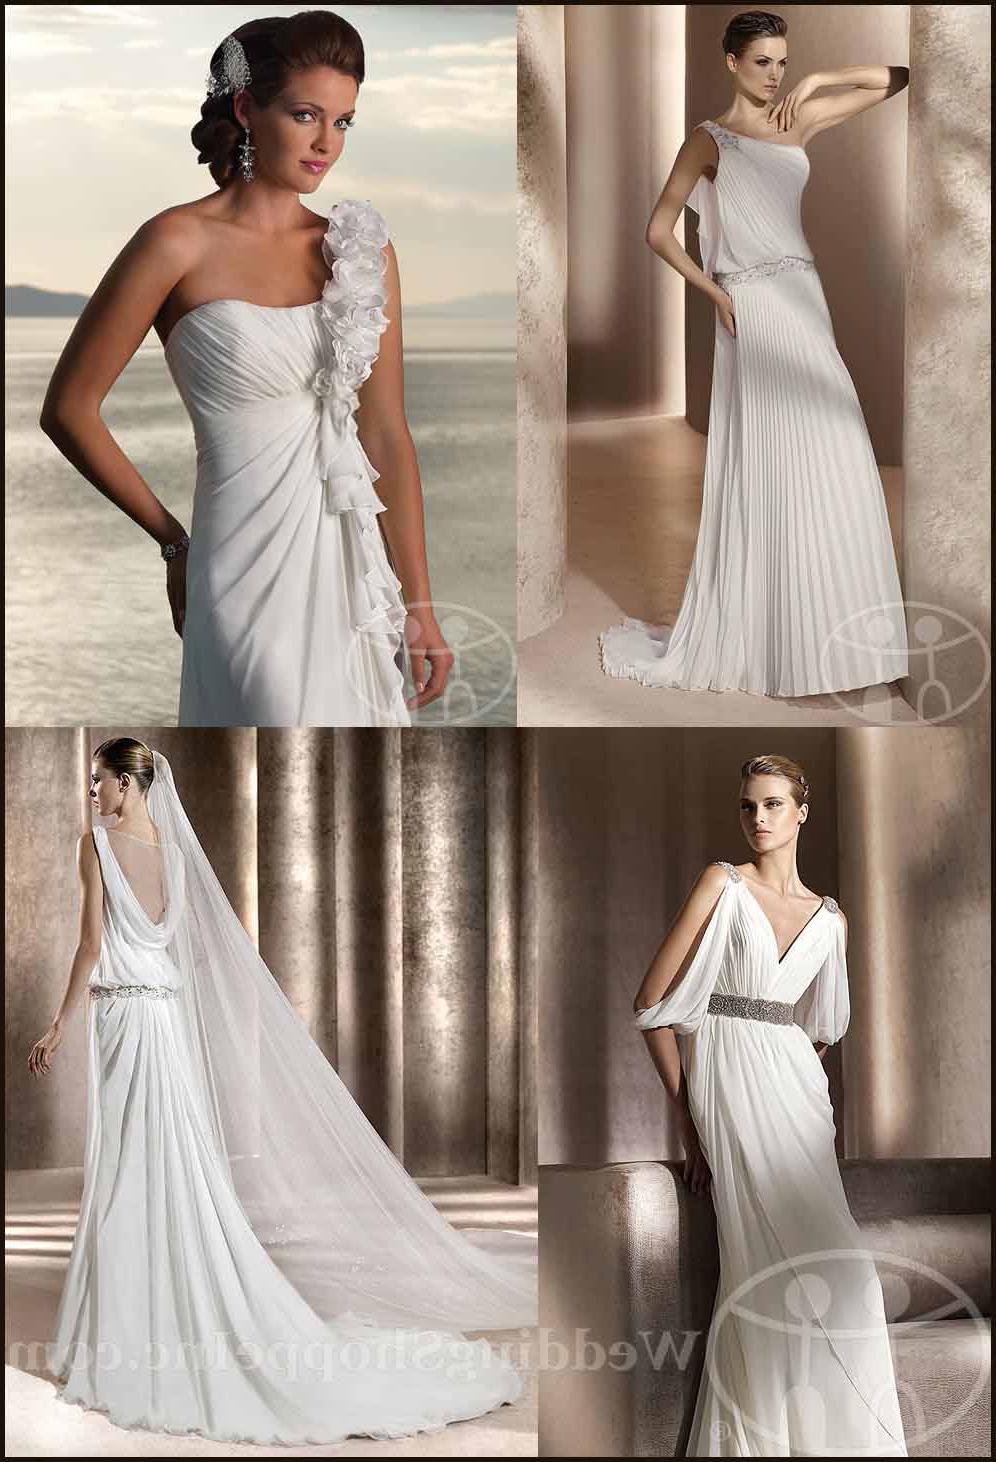 Grecian wedding gowns